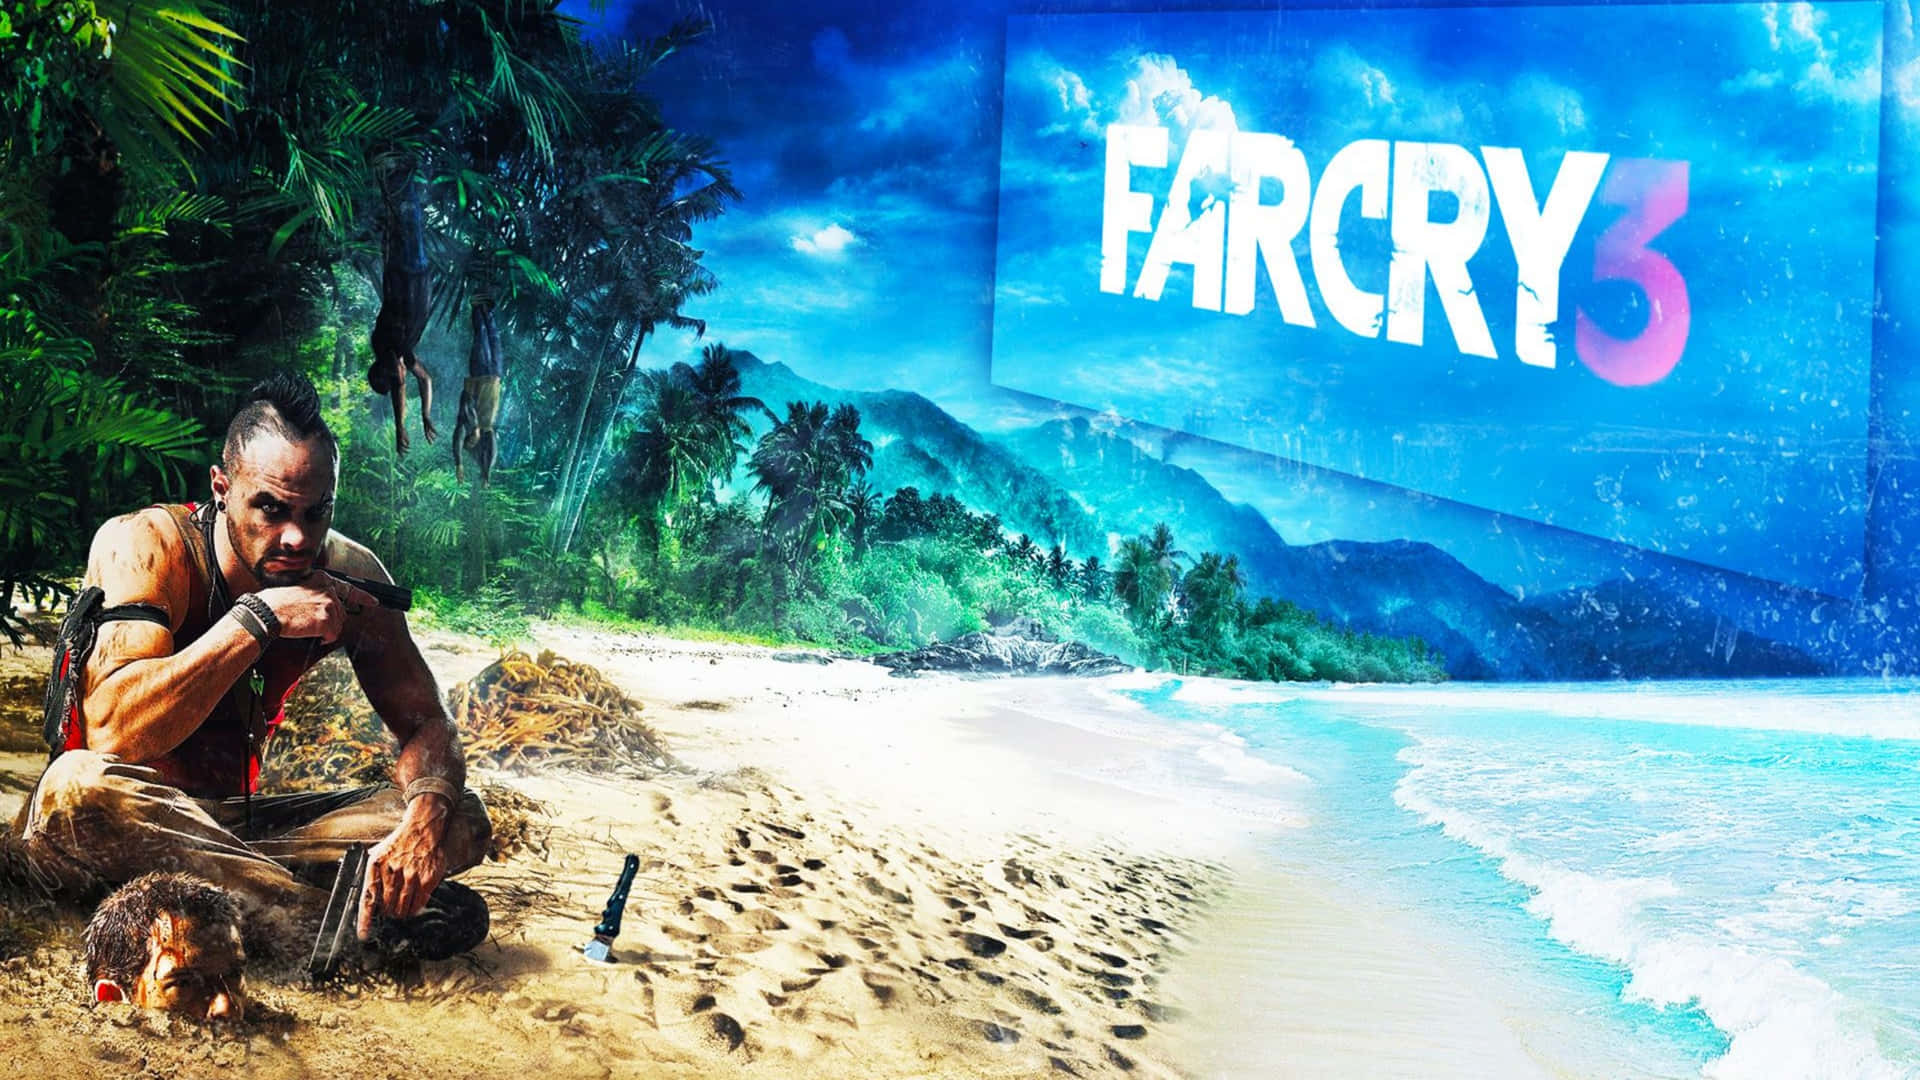 Spettacolariimmagini Di Far Cry 3 - Schermo 1440p